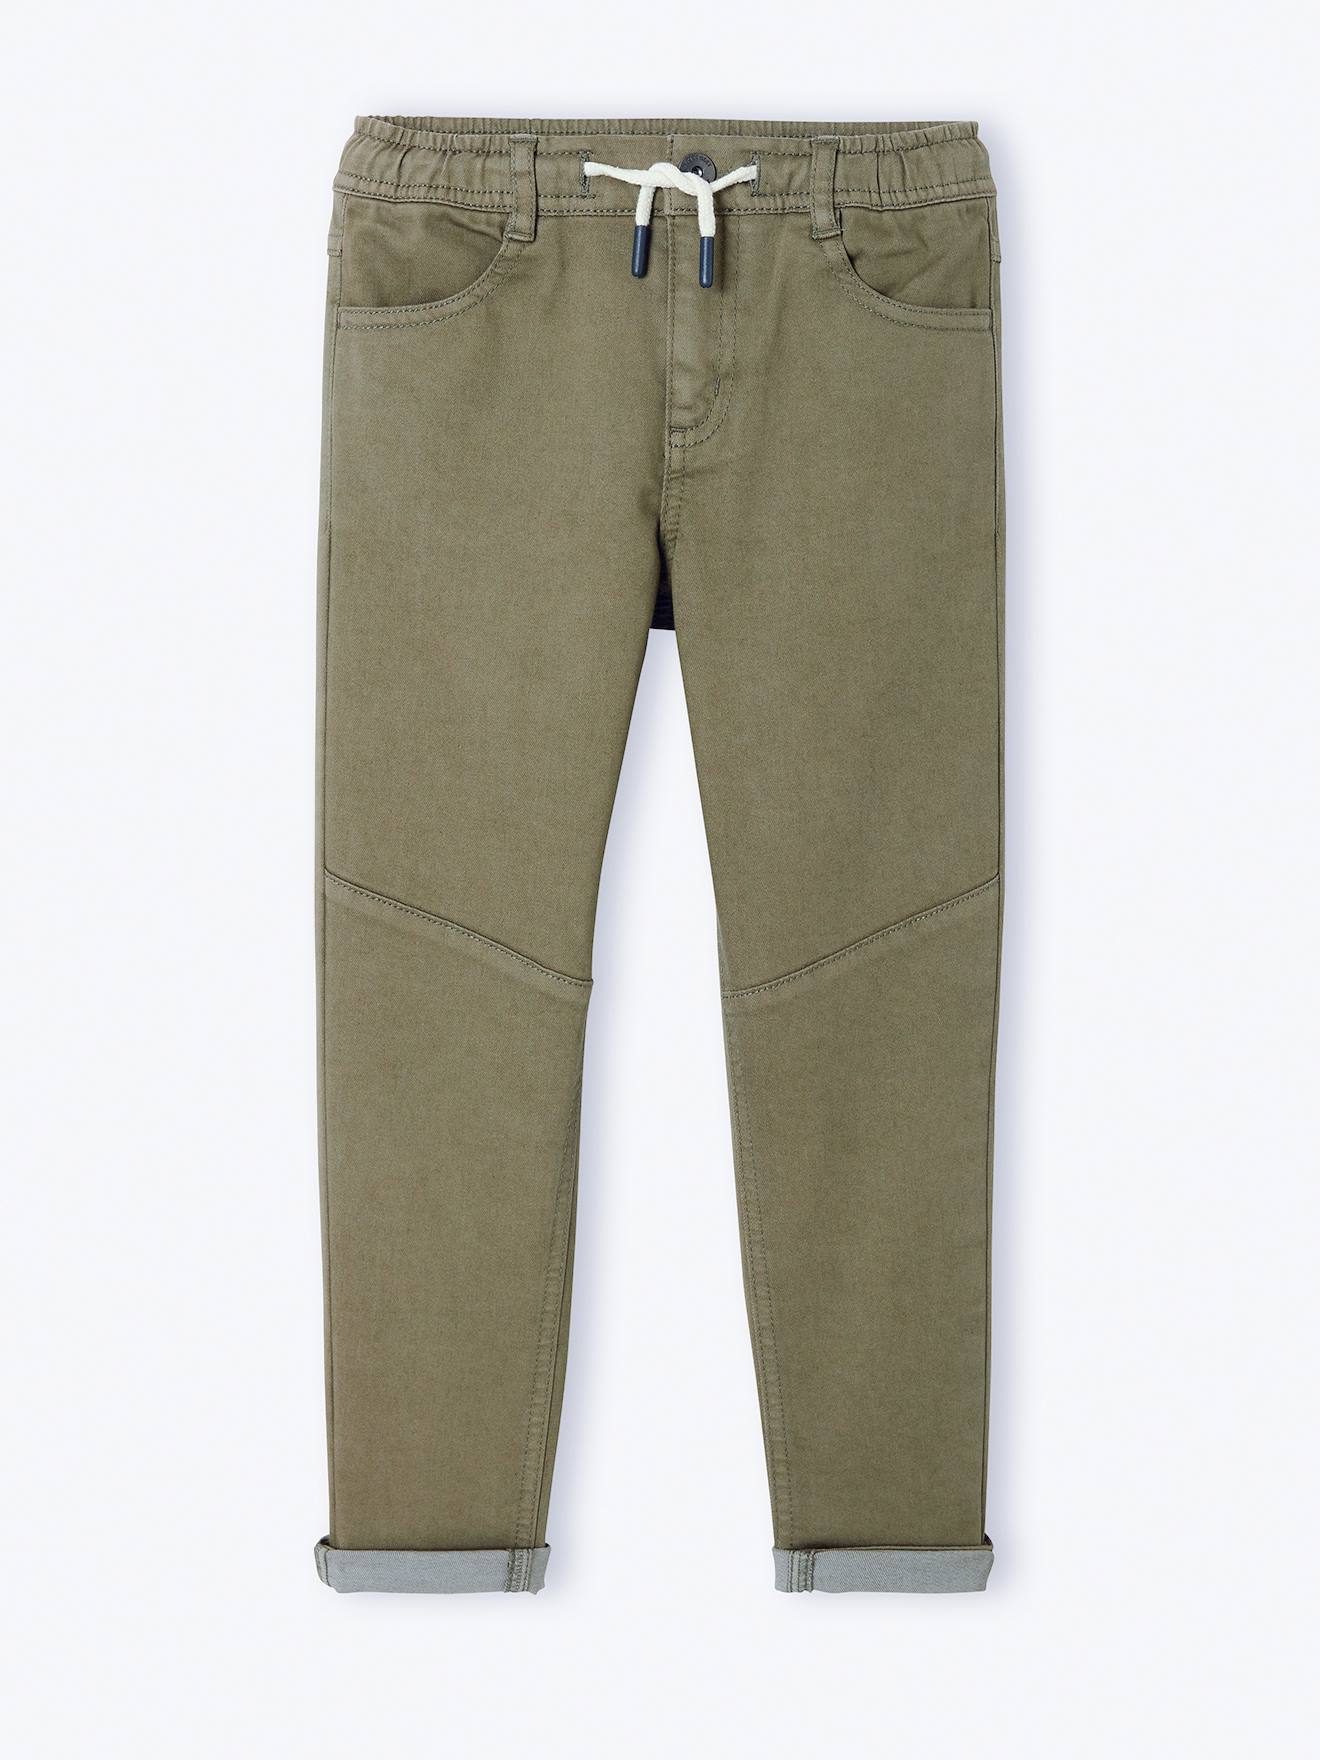 Pantalon slim couleur facile à enfiler garçon vert olive